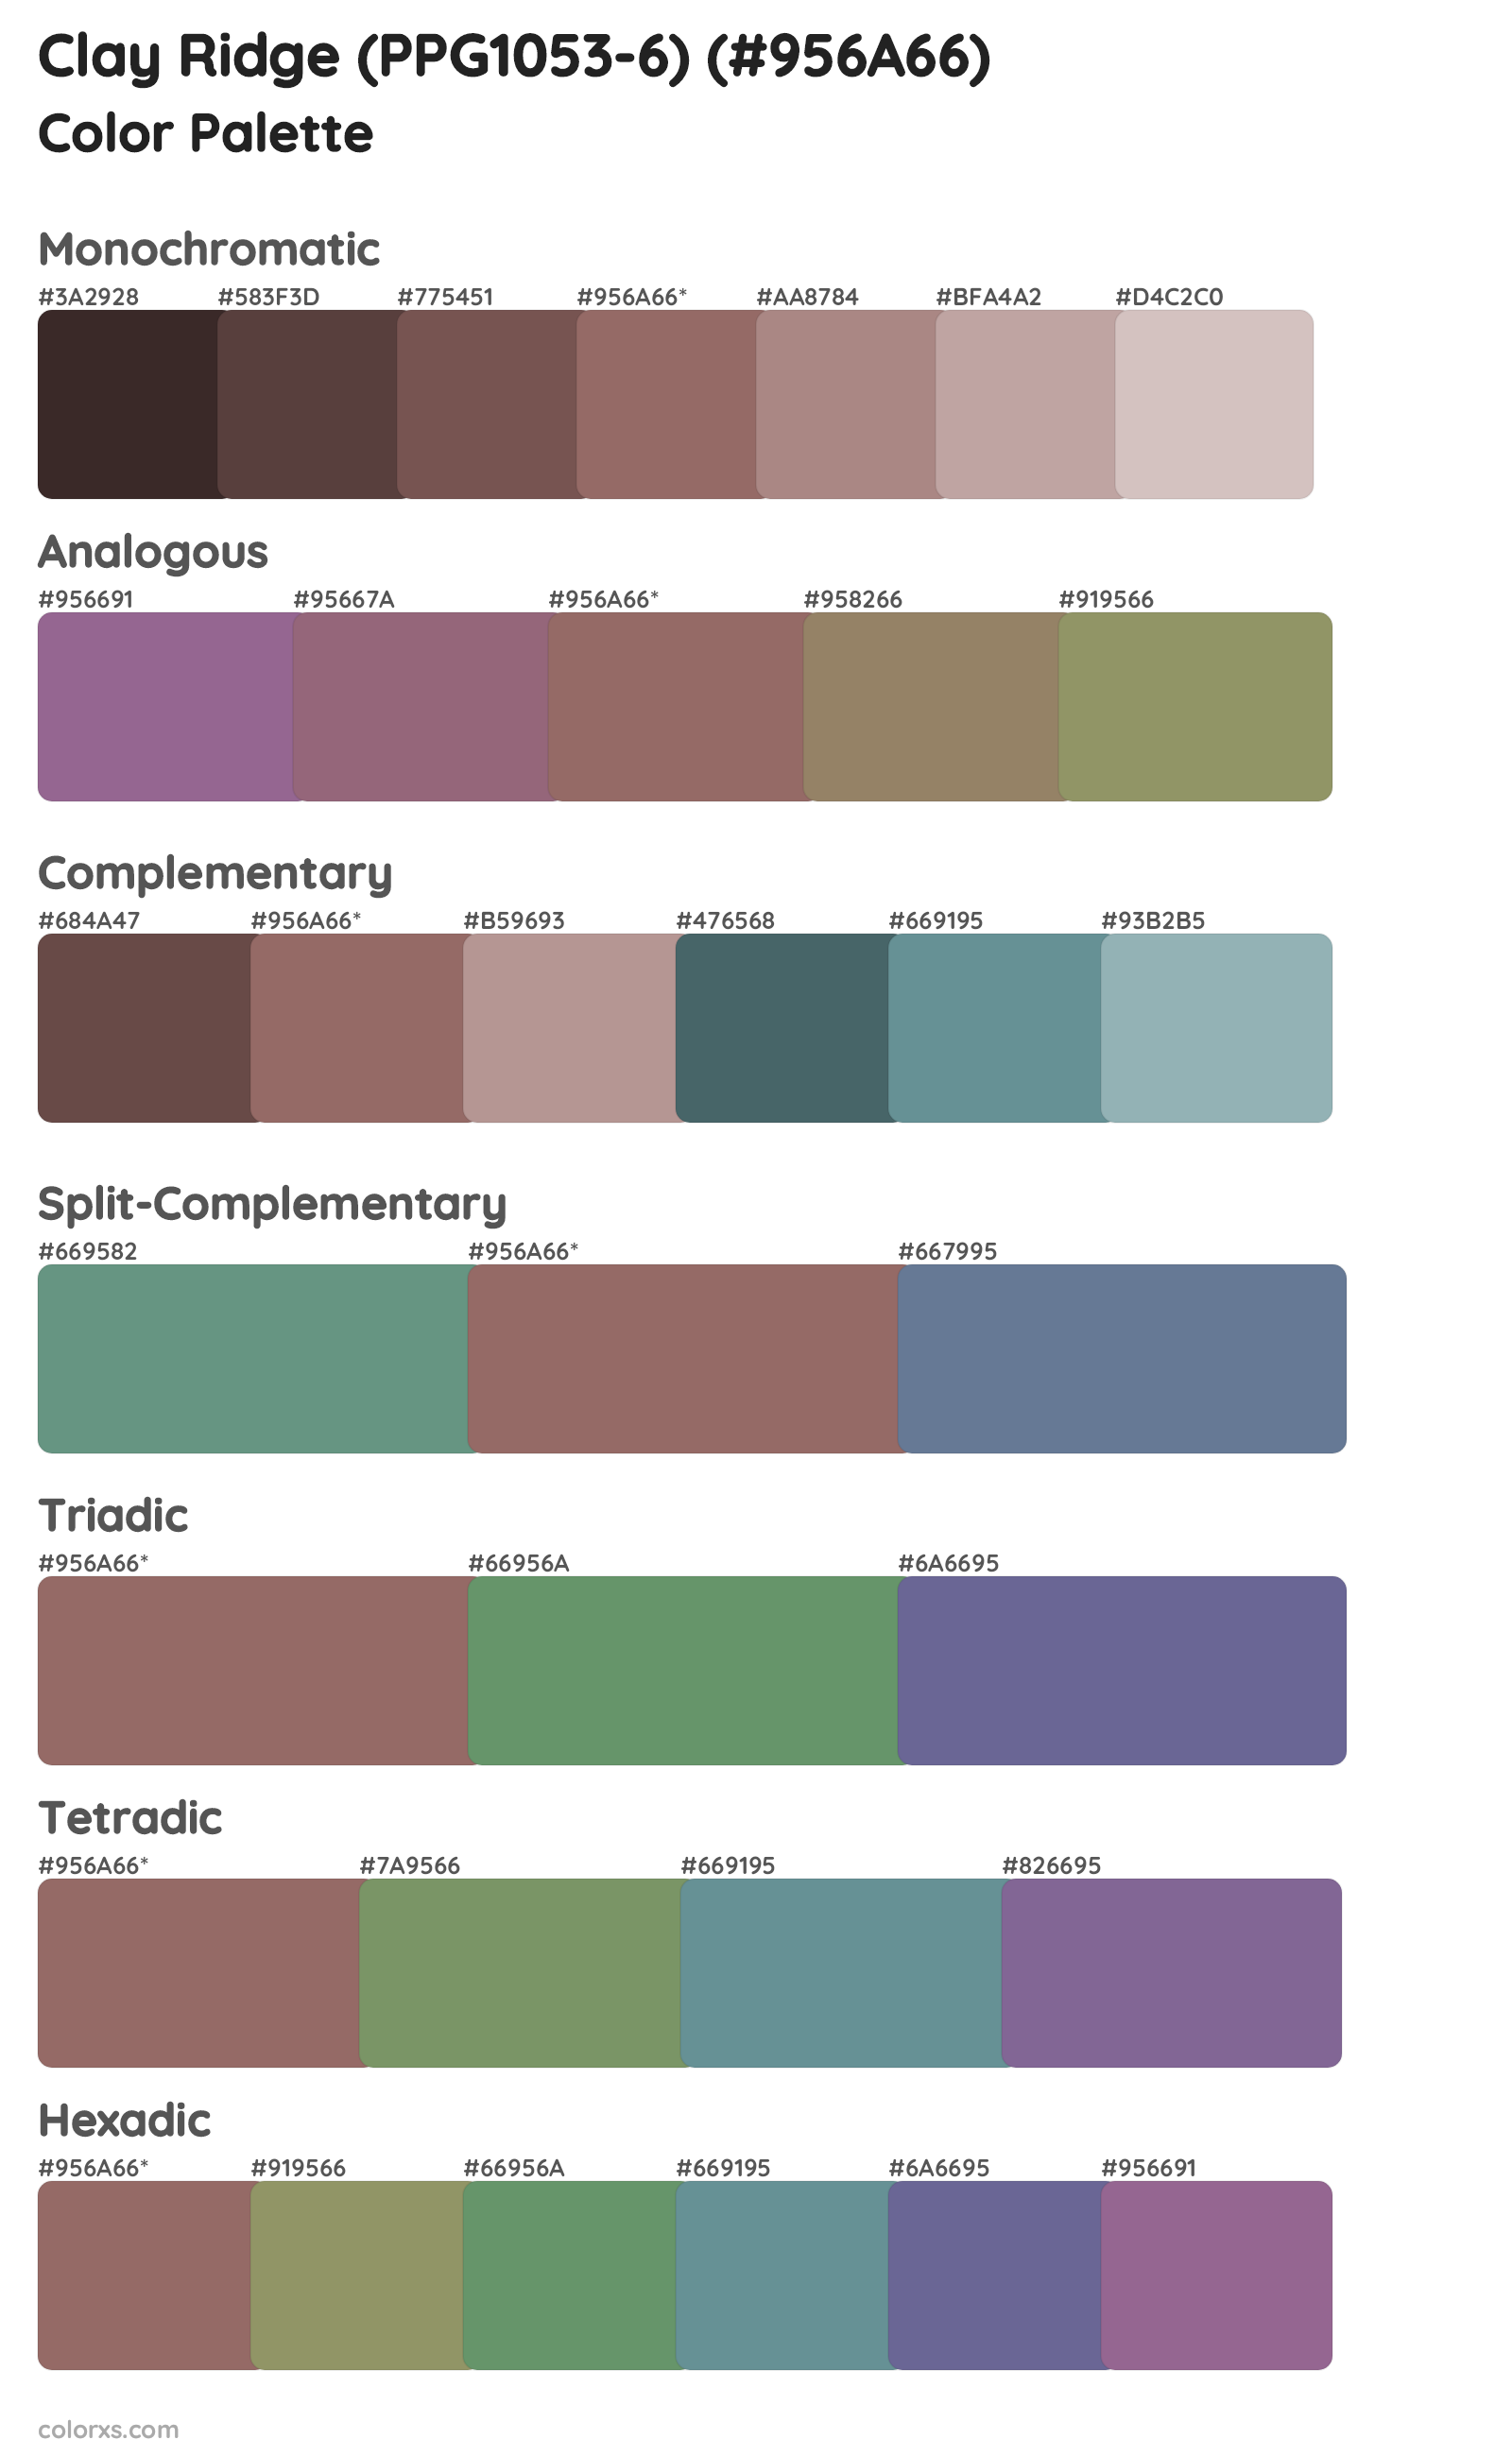 Clay Ridge (PPG1053-6) Color Scheme Palettes